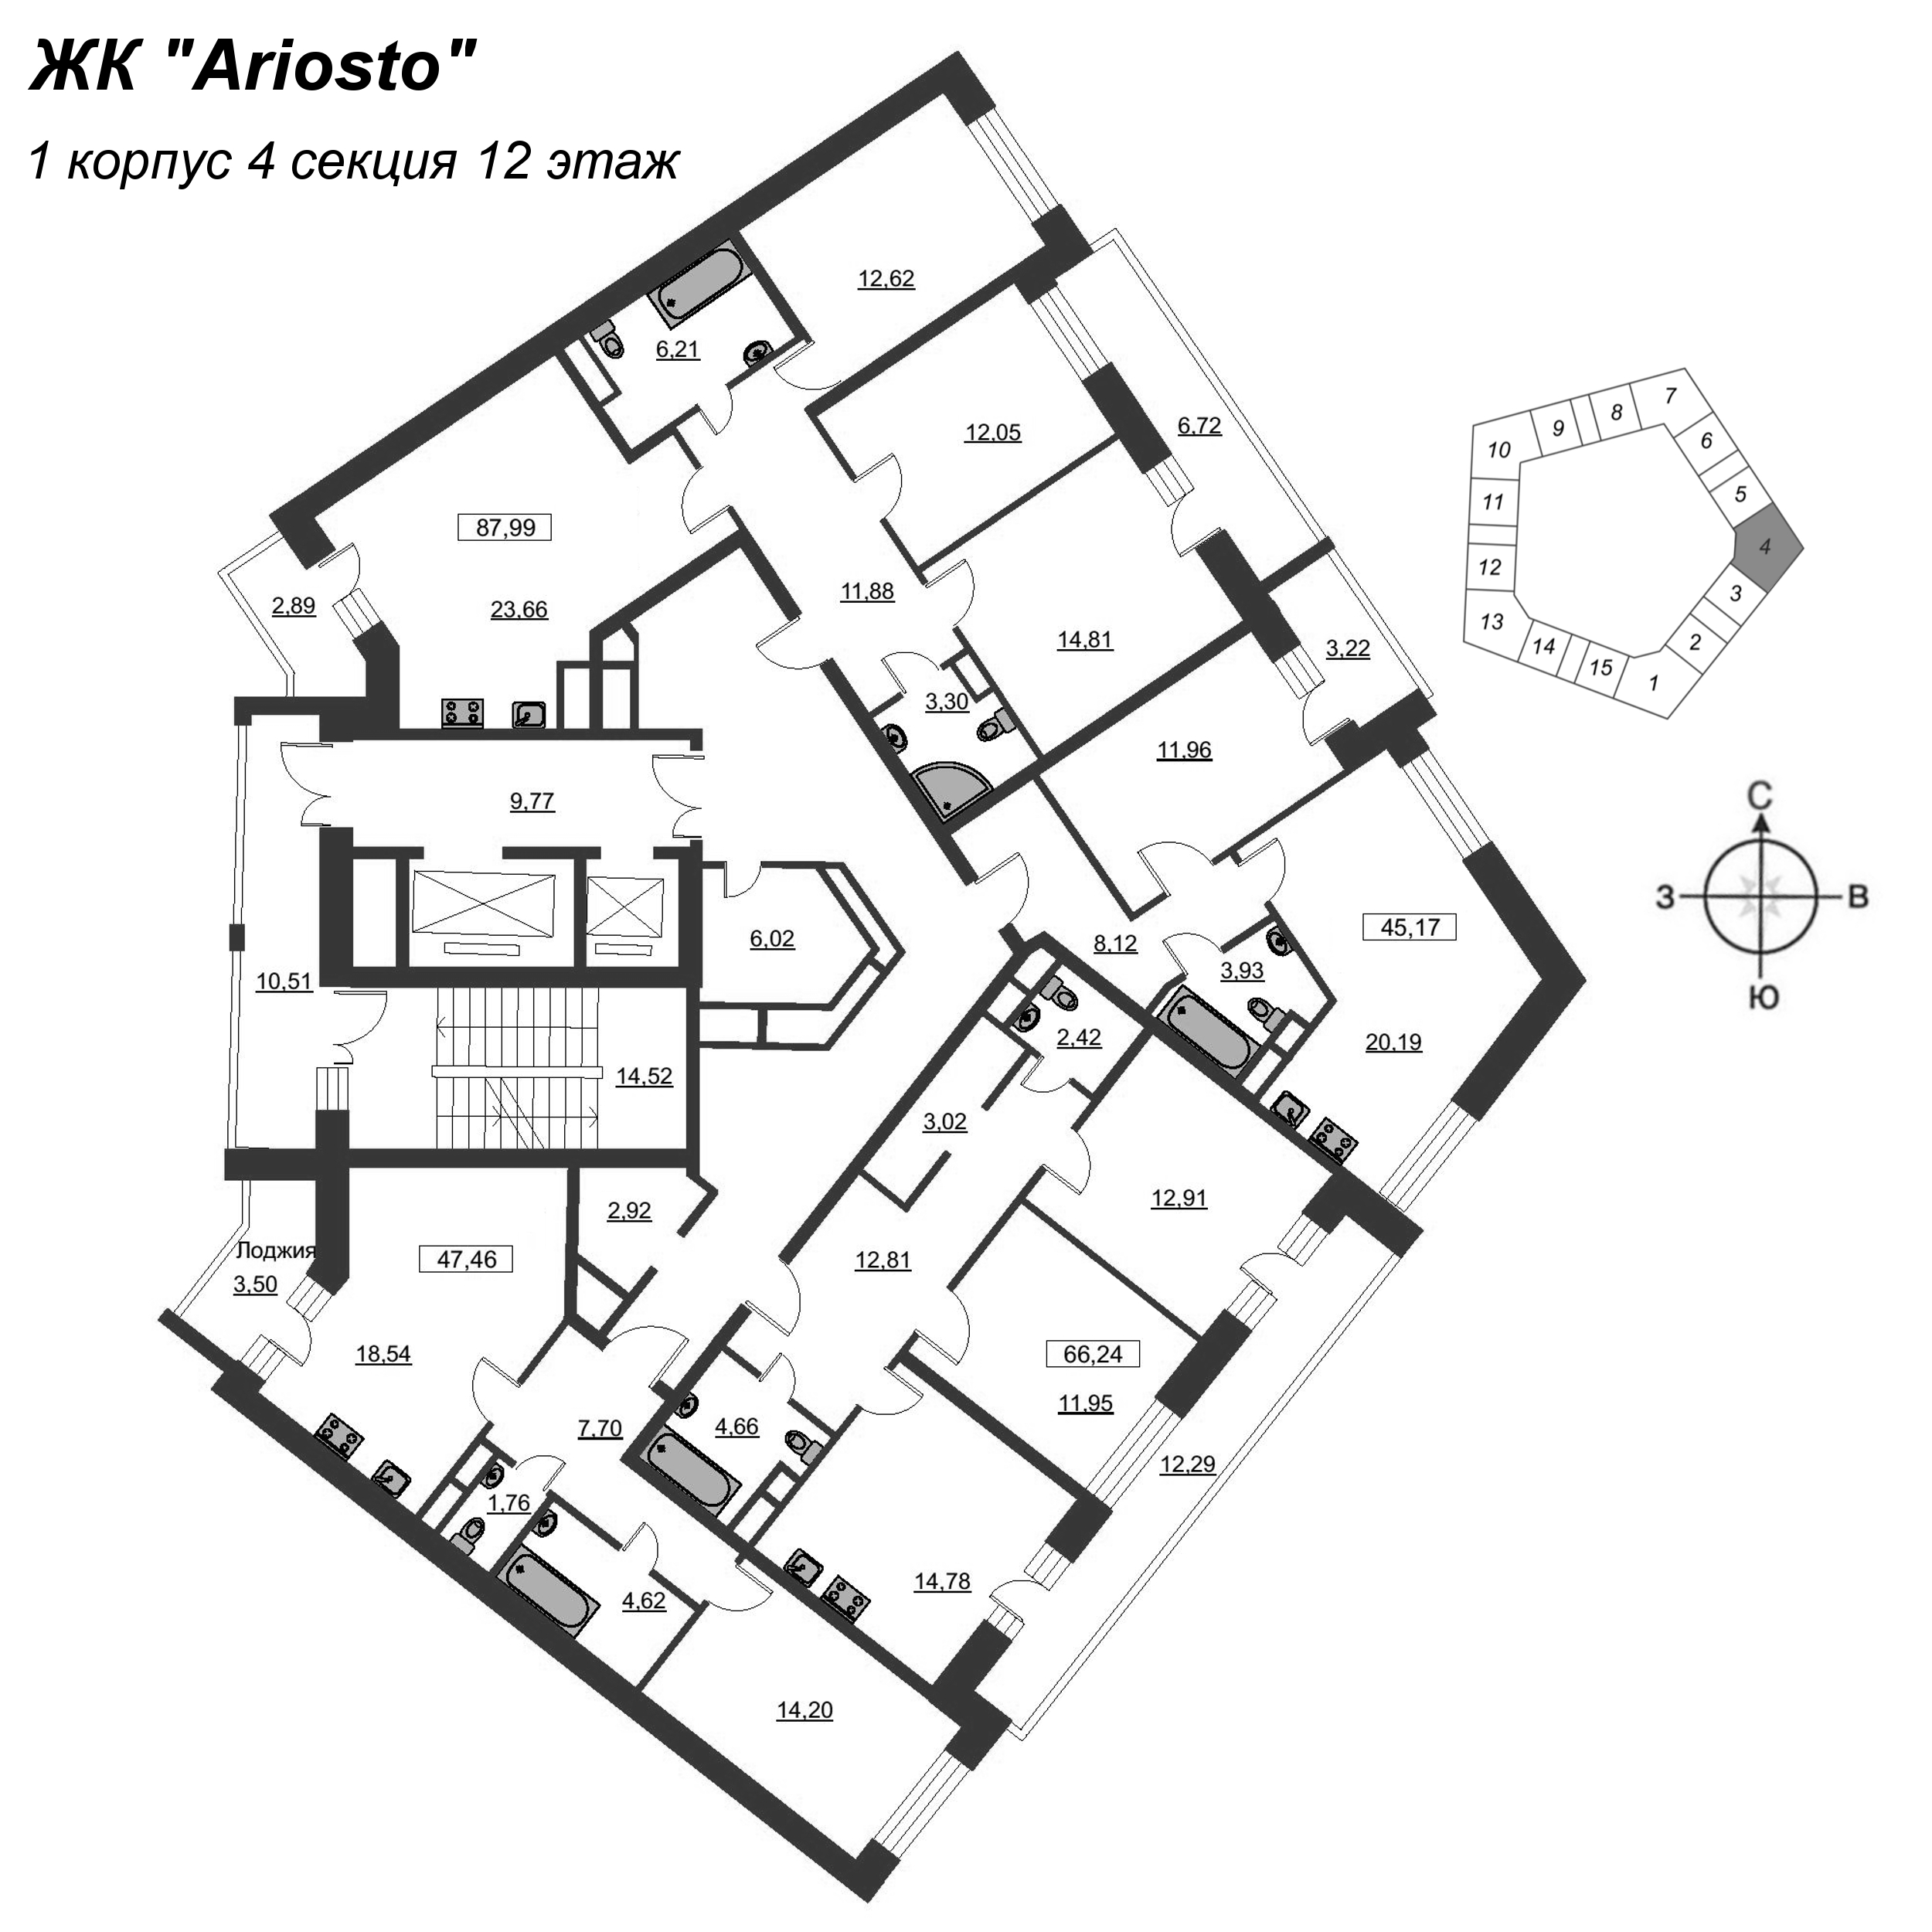 2-комнатная (Евро) квартира, 47.46 м² в ЖК "Ariosto" - планировка этажа